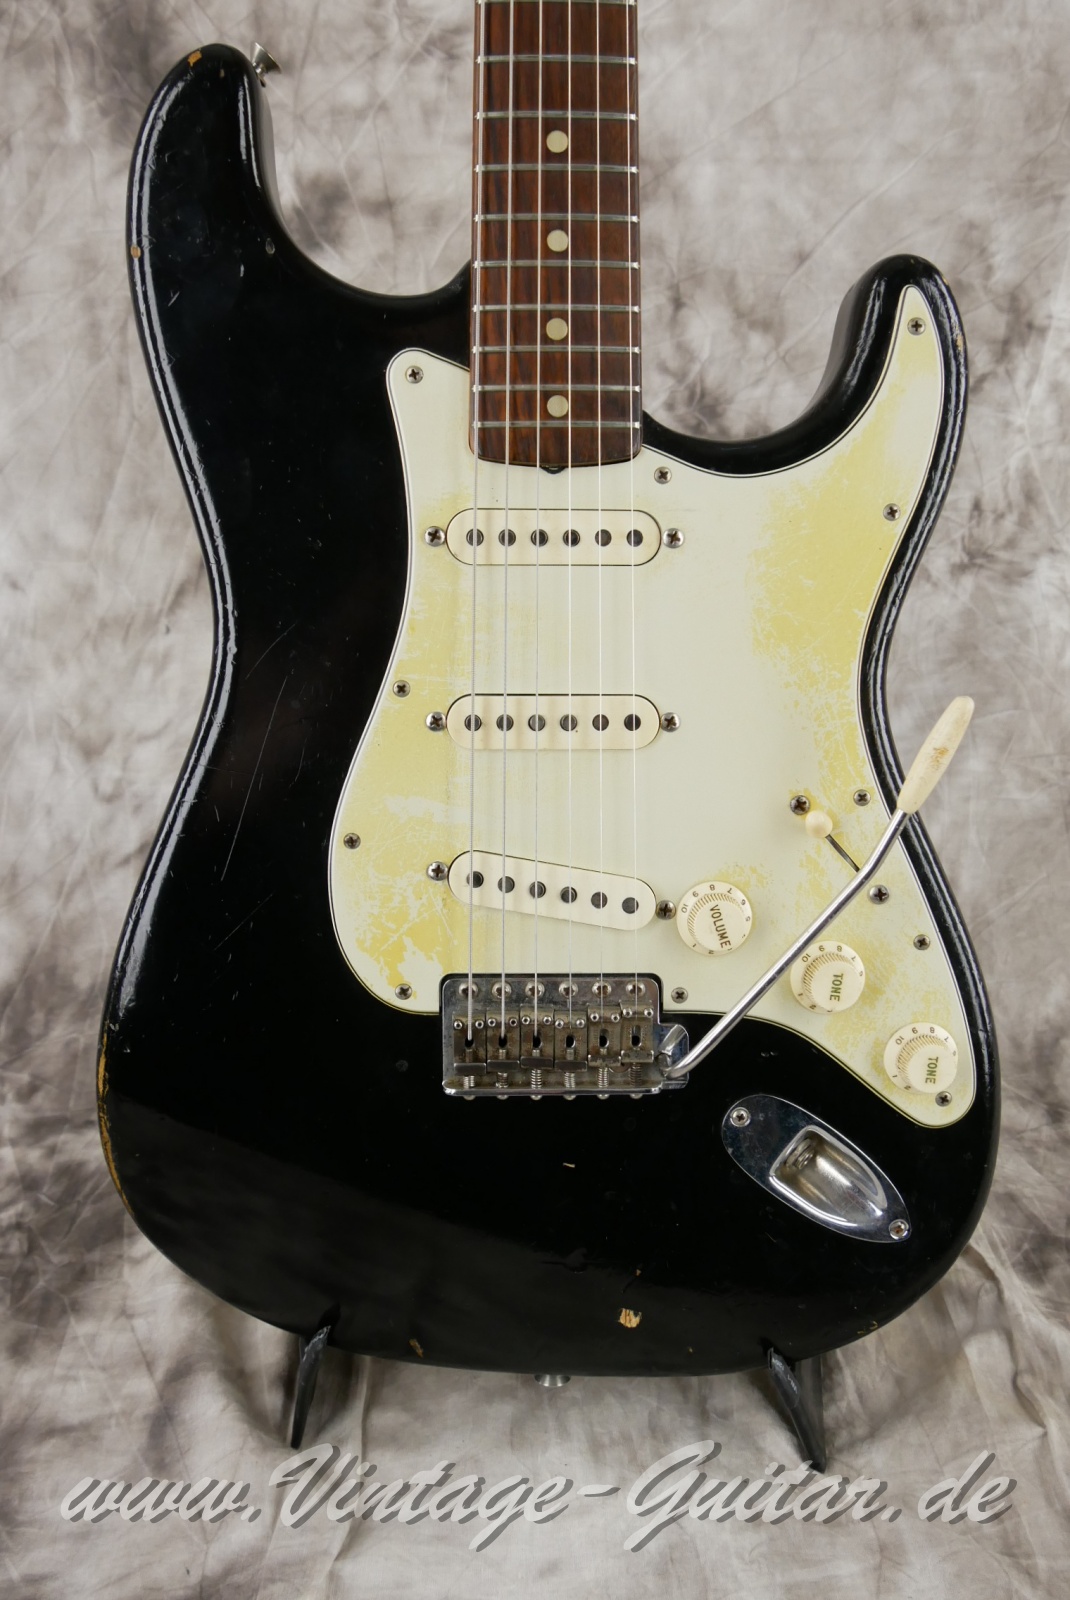 Fender-Stratocaster-1964-body-with-1969-neck-black-007.jpg